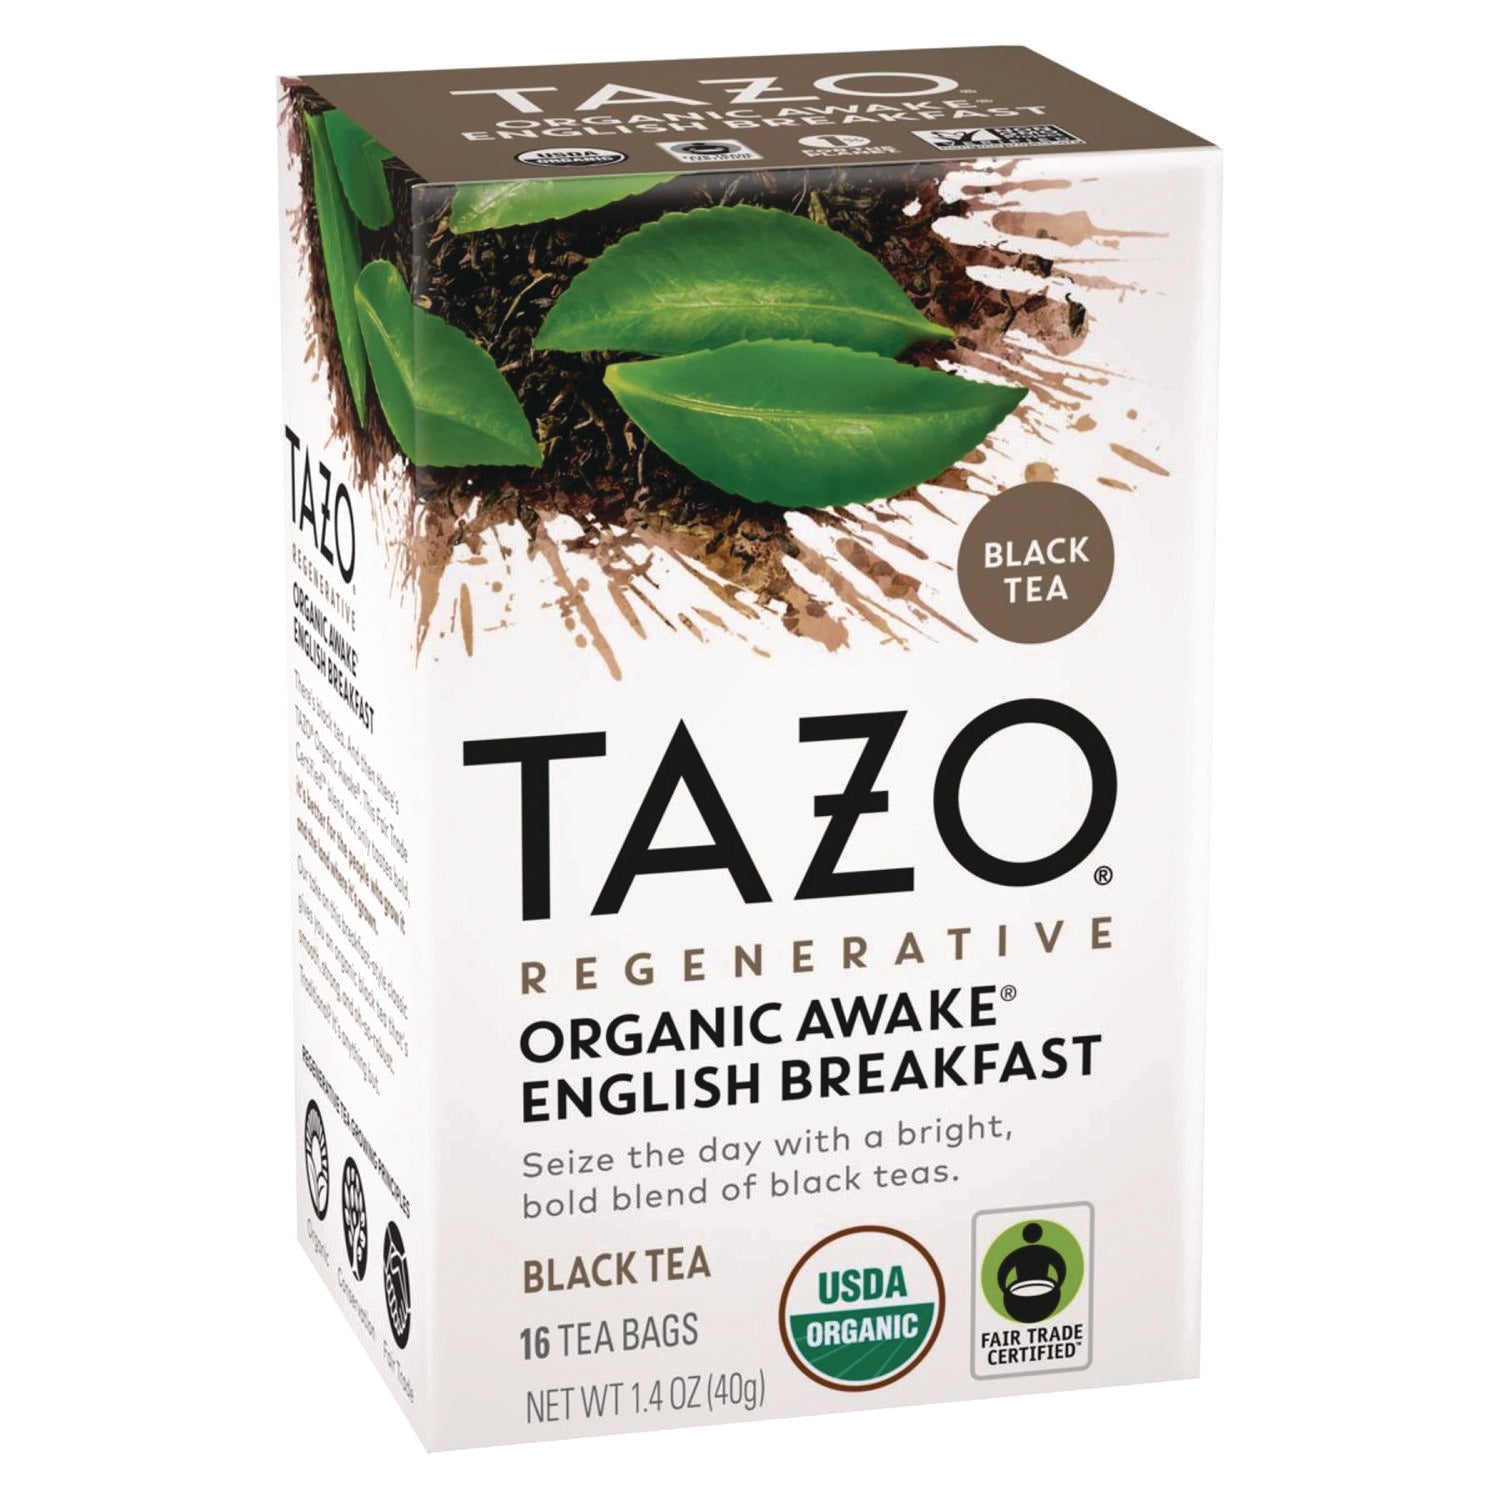 tea-bags-organic-awake-english-breakfast-16-box-6-boxes-carton_tzo00303 - 1